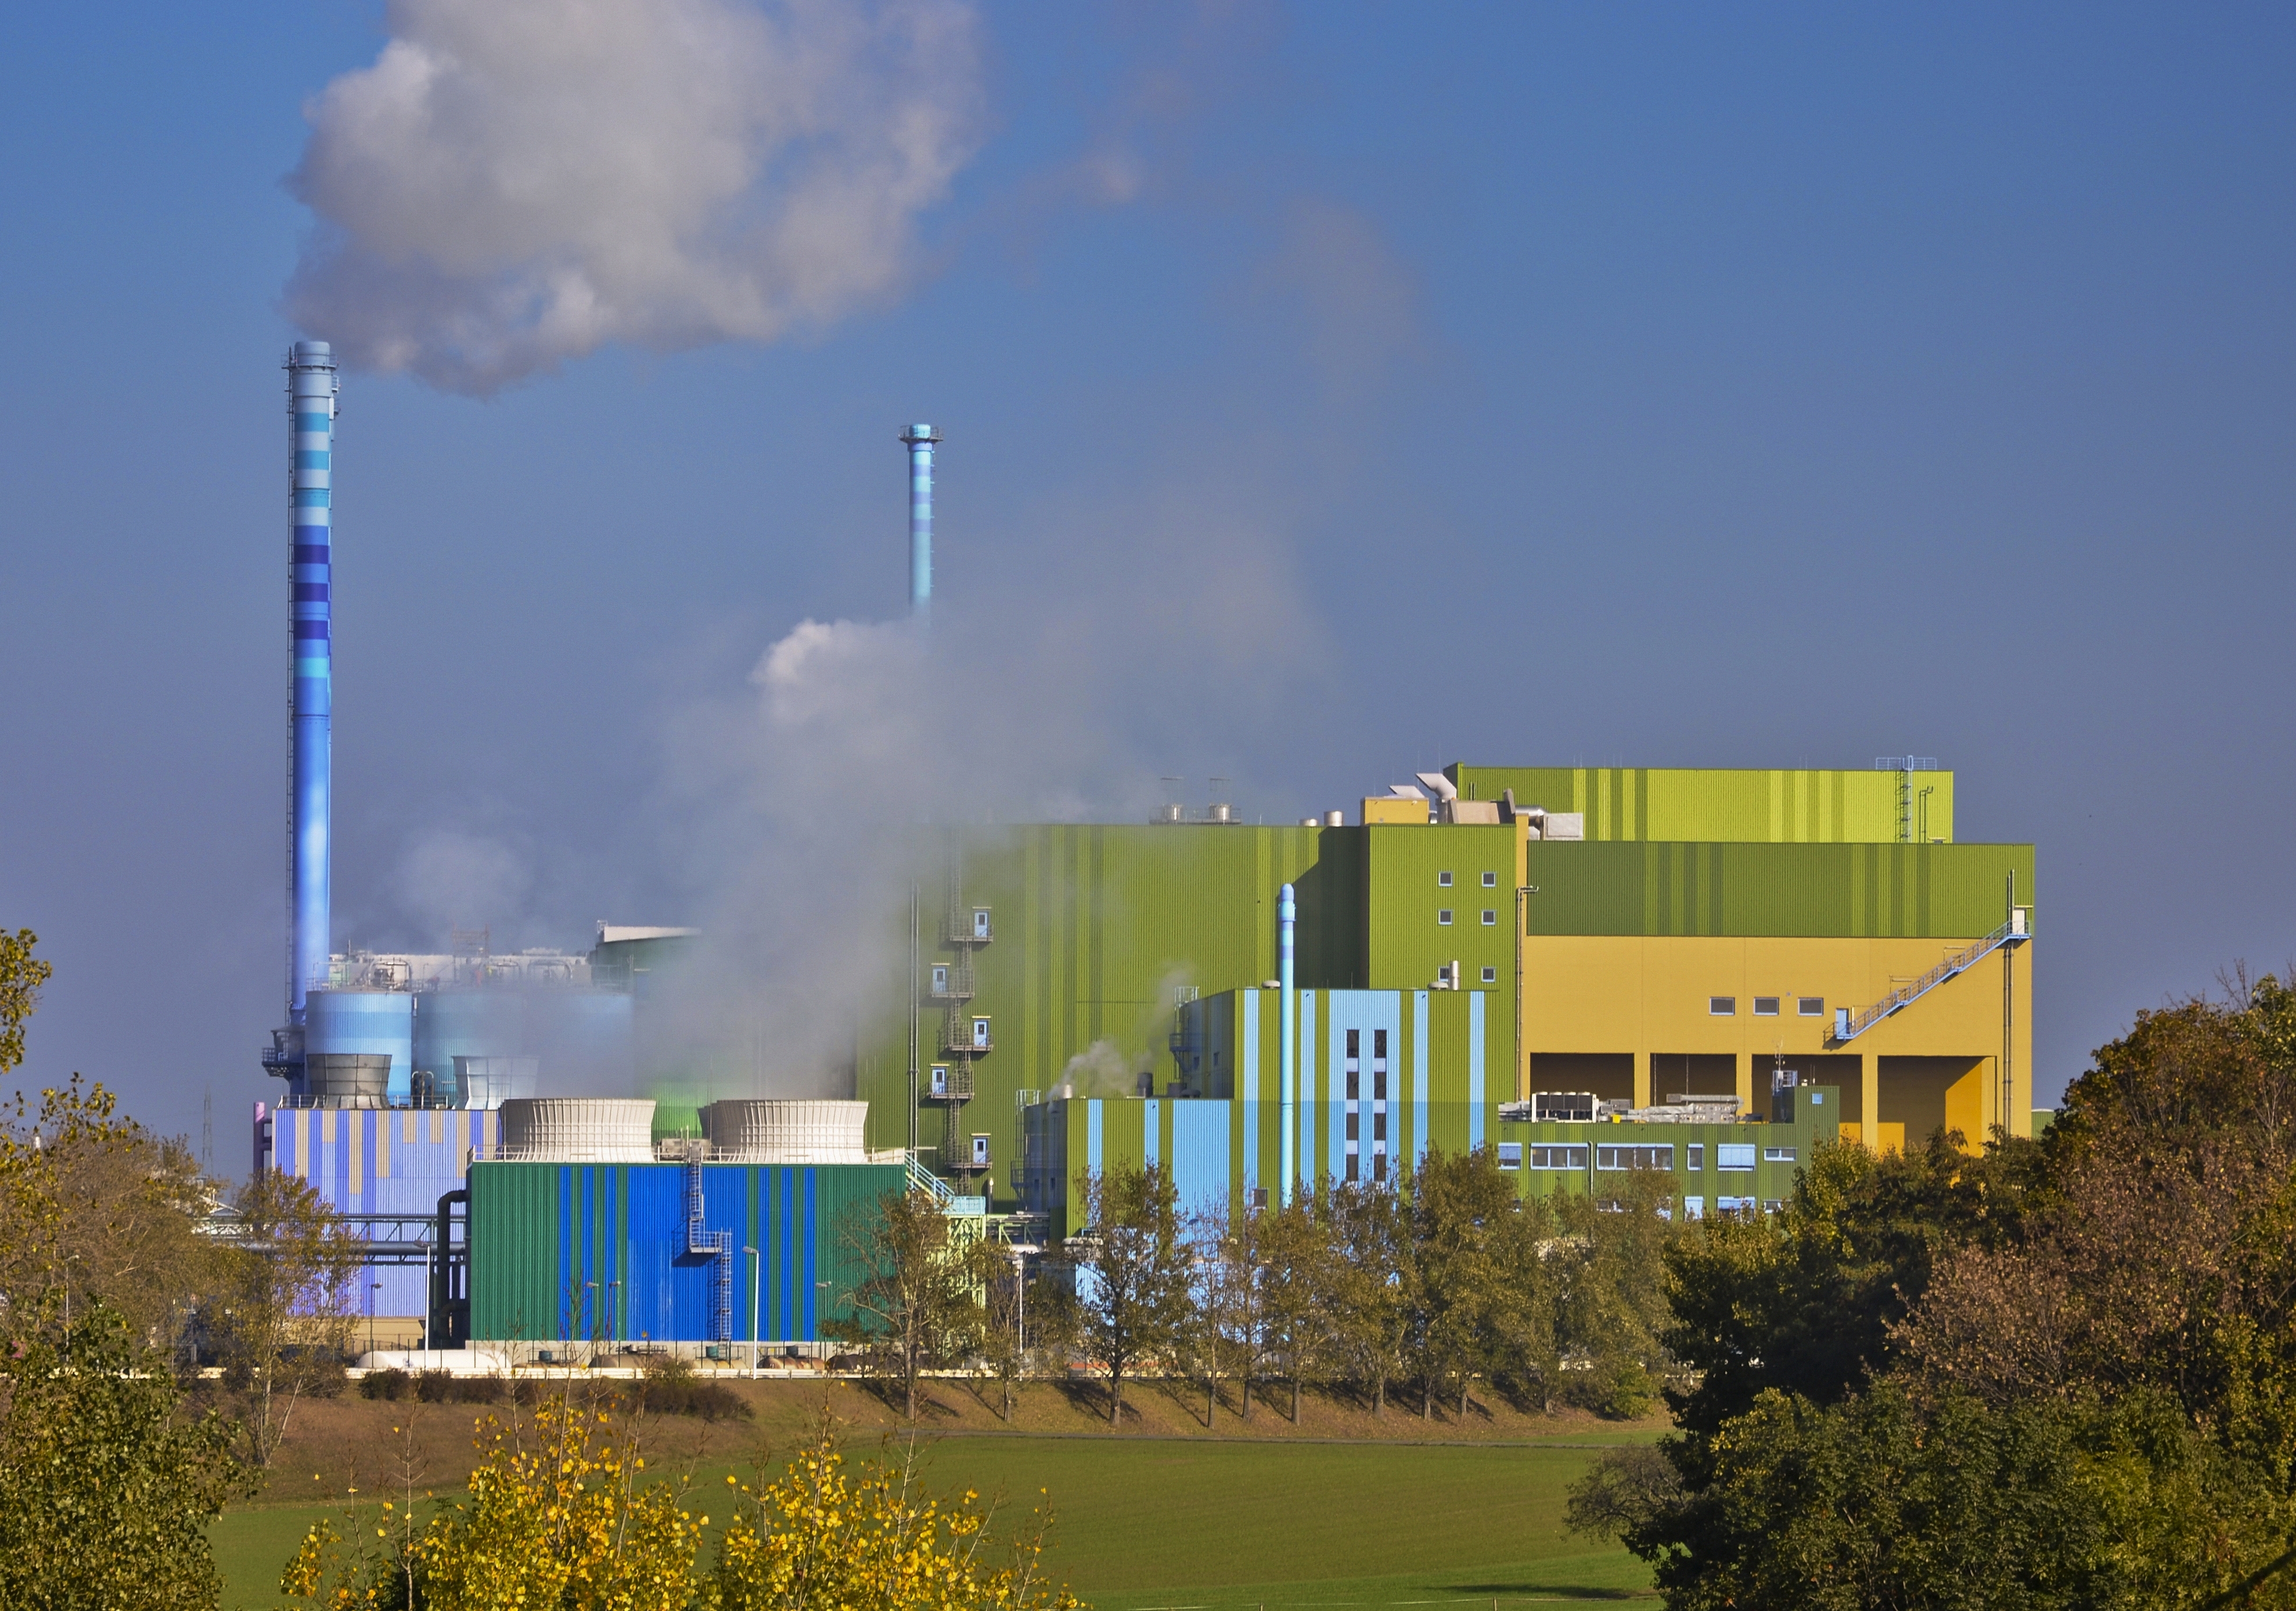 Industry park Höchst - waste-to-energy plant - Industriepark Höchst - Müllverbrennungsanlage - 02